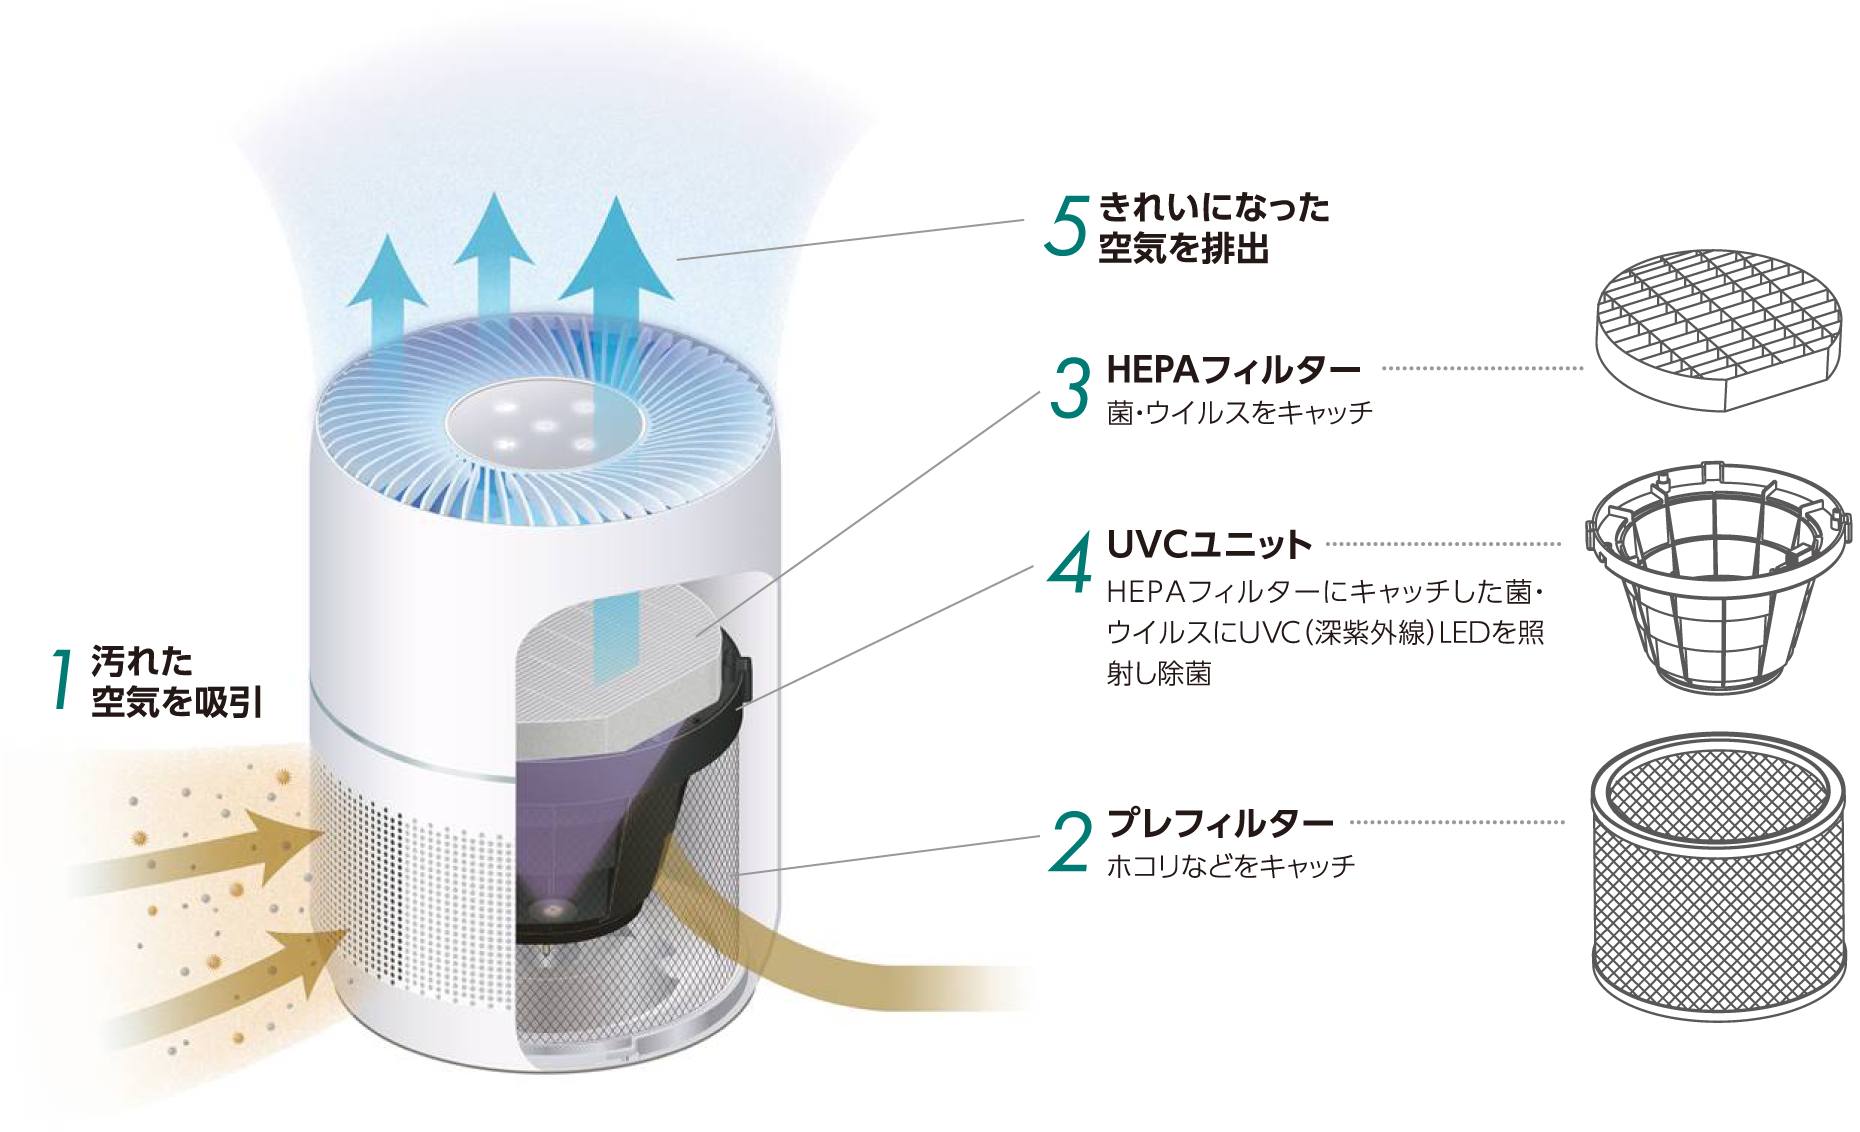 UVC（深紫外線）空間除菌機 | 製品紹介 | 除菌関連機器 | 株式会社